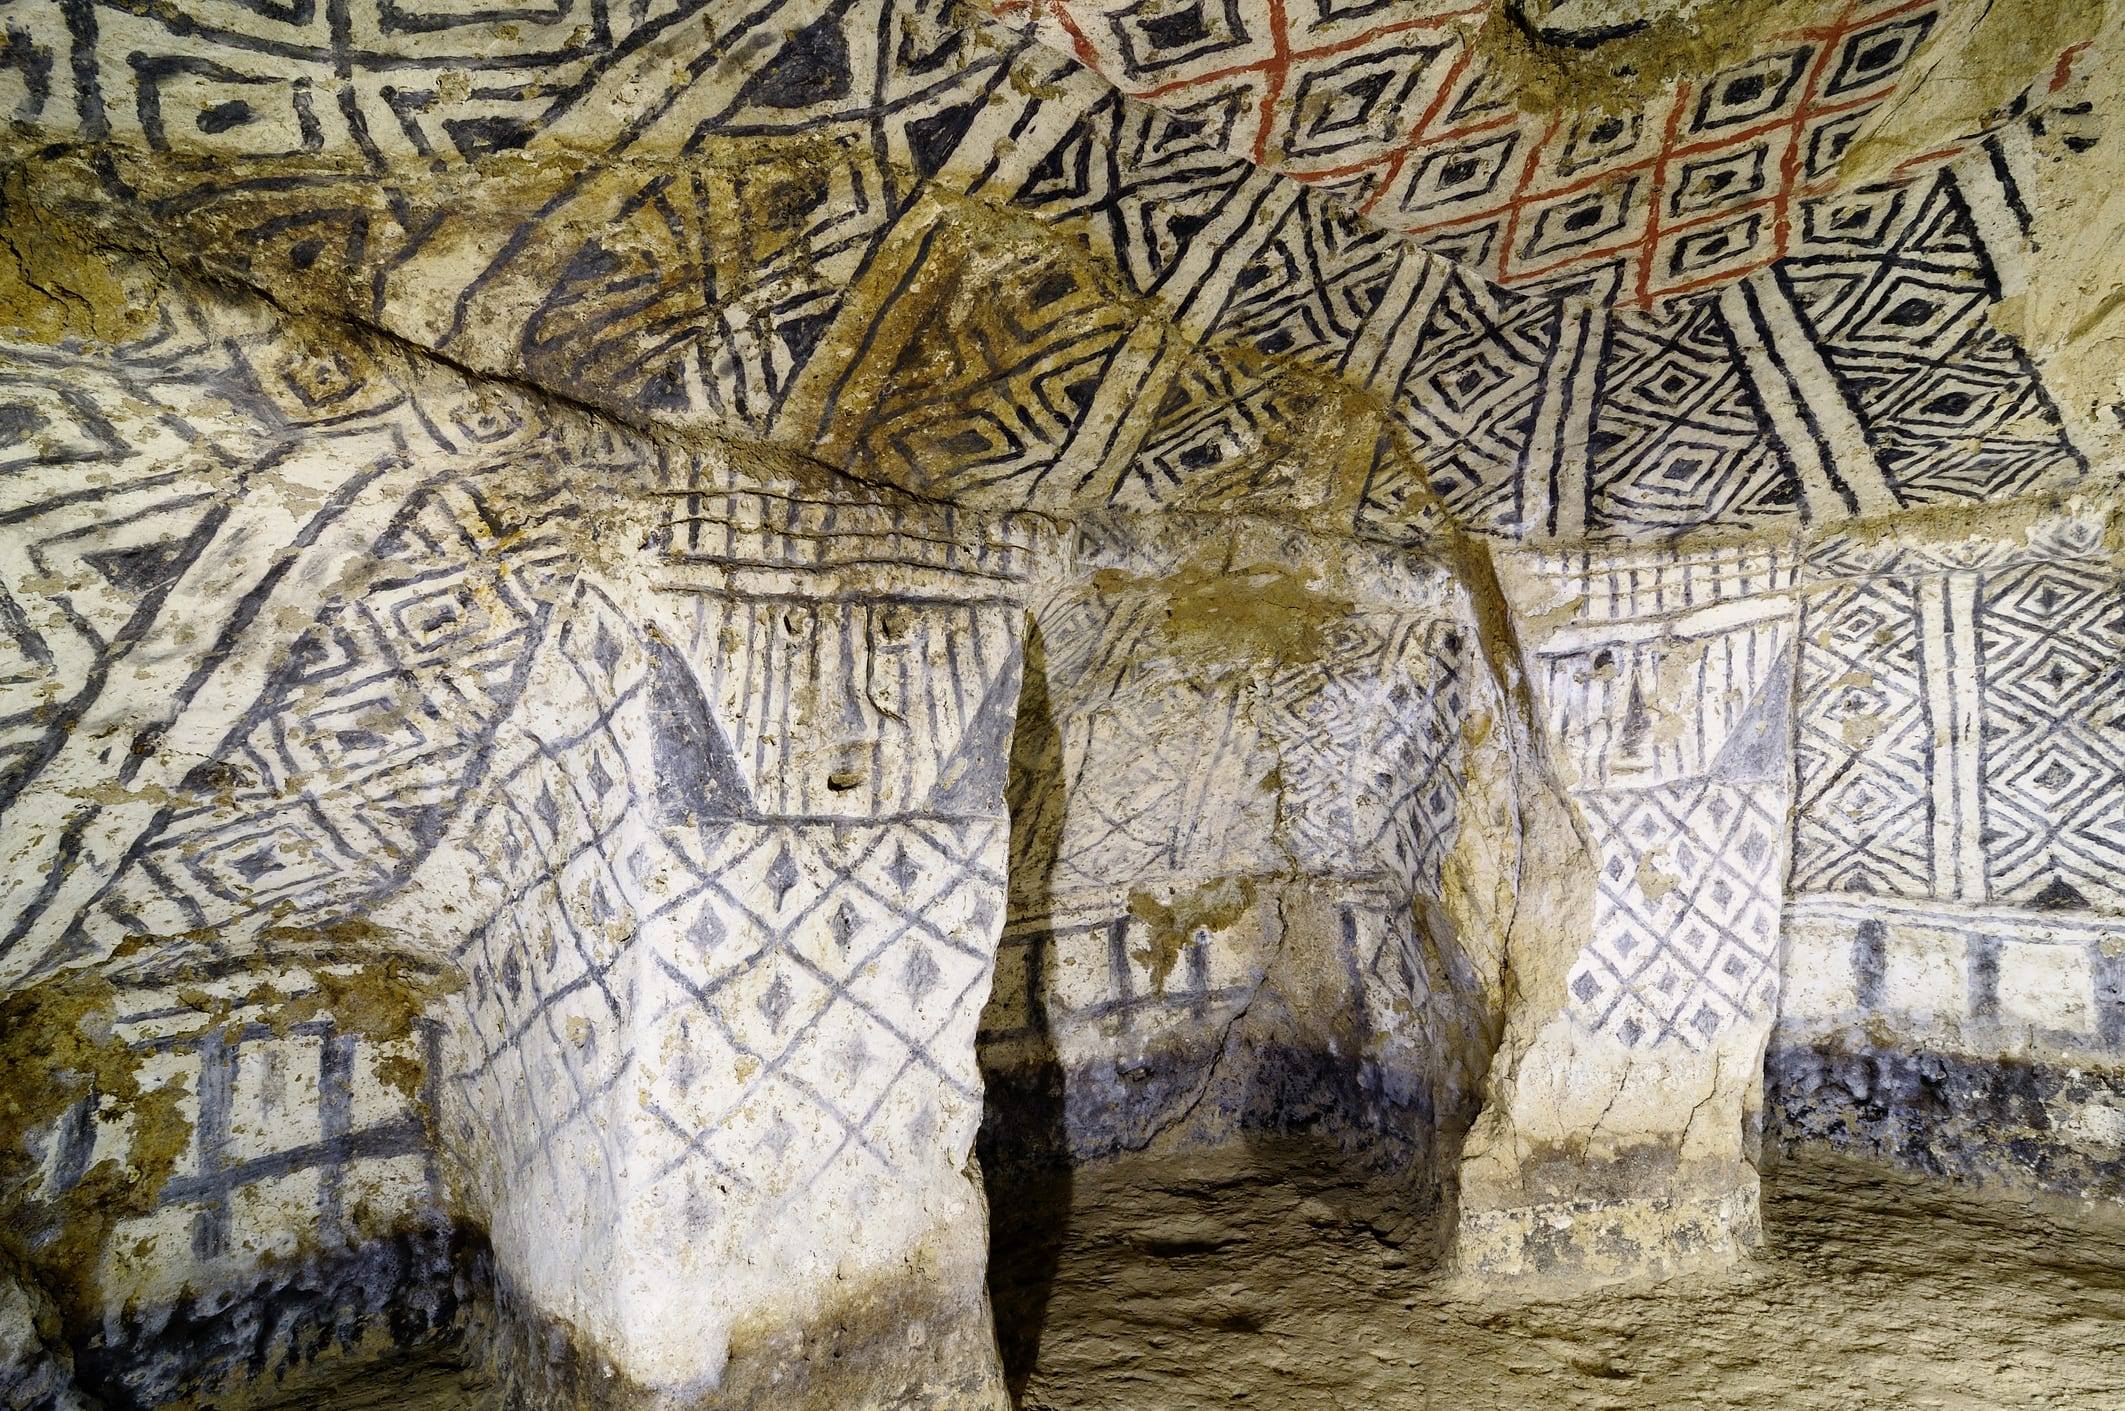 Tierradentro - burial caves